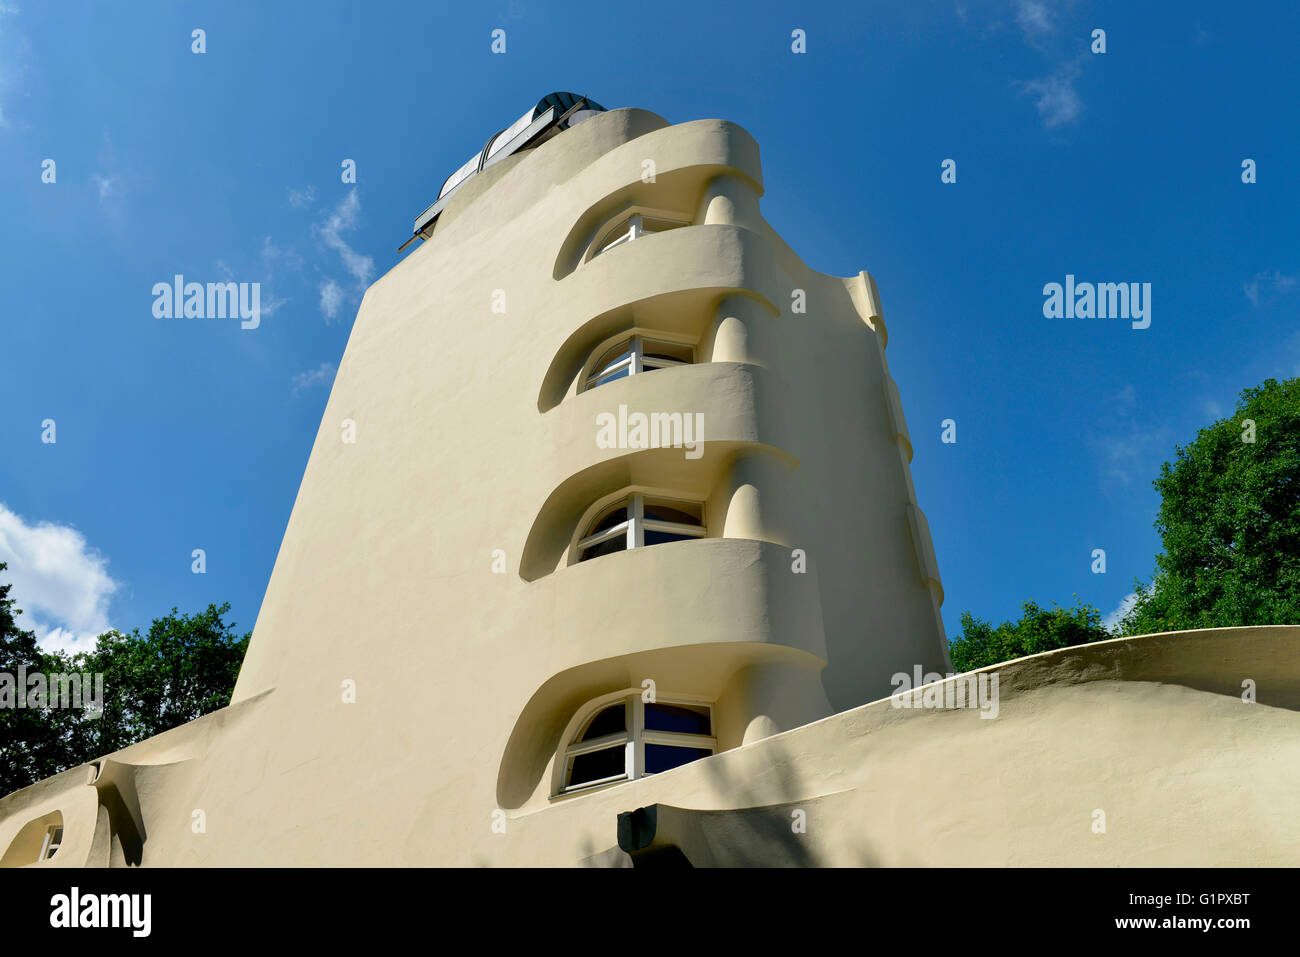 Einstein tower, Einsteinturm, Telegrafenberg, Potsdam, Brandenburg, Germany Stock Photo